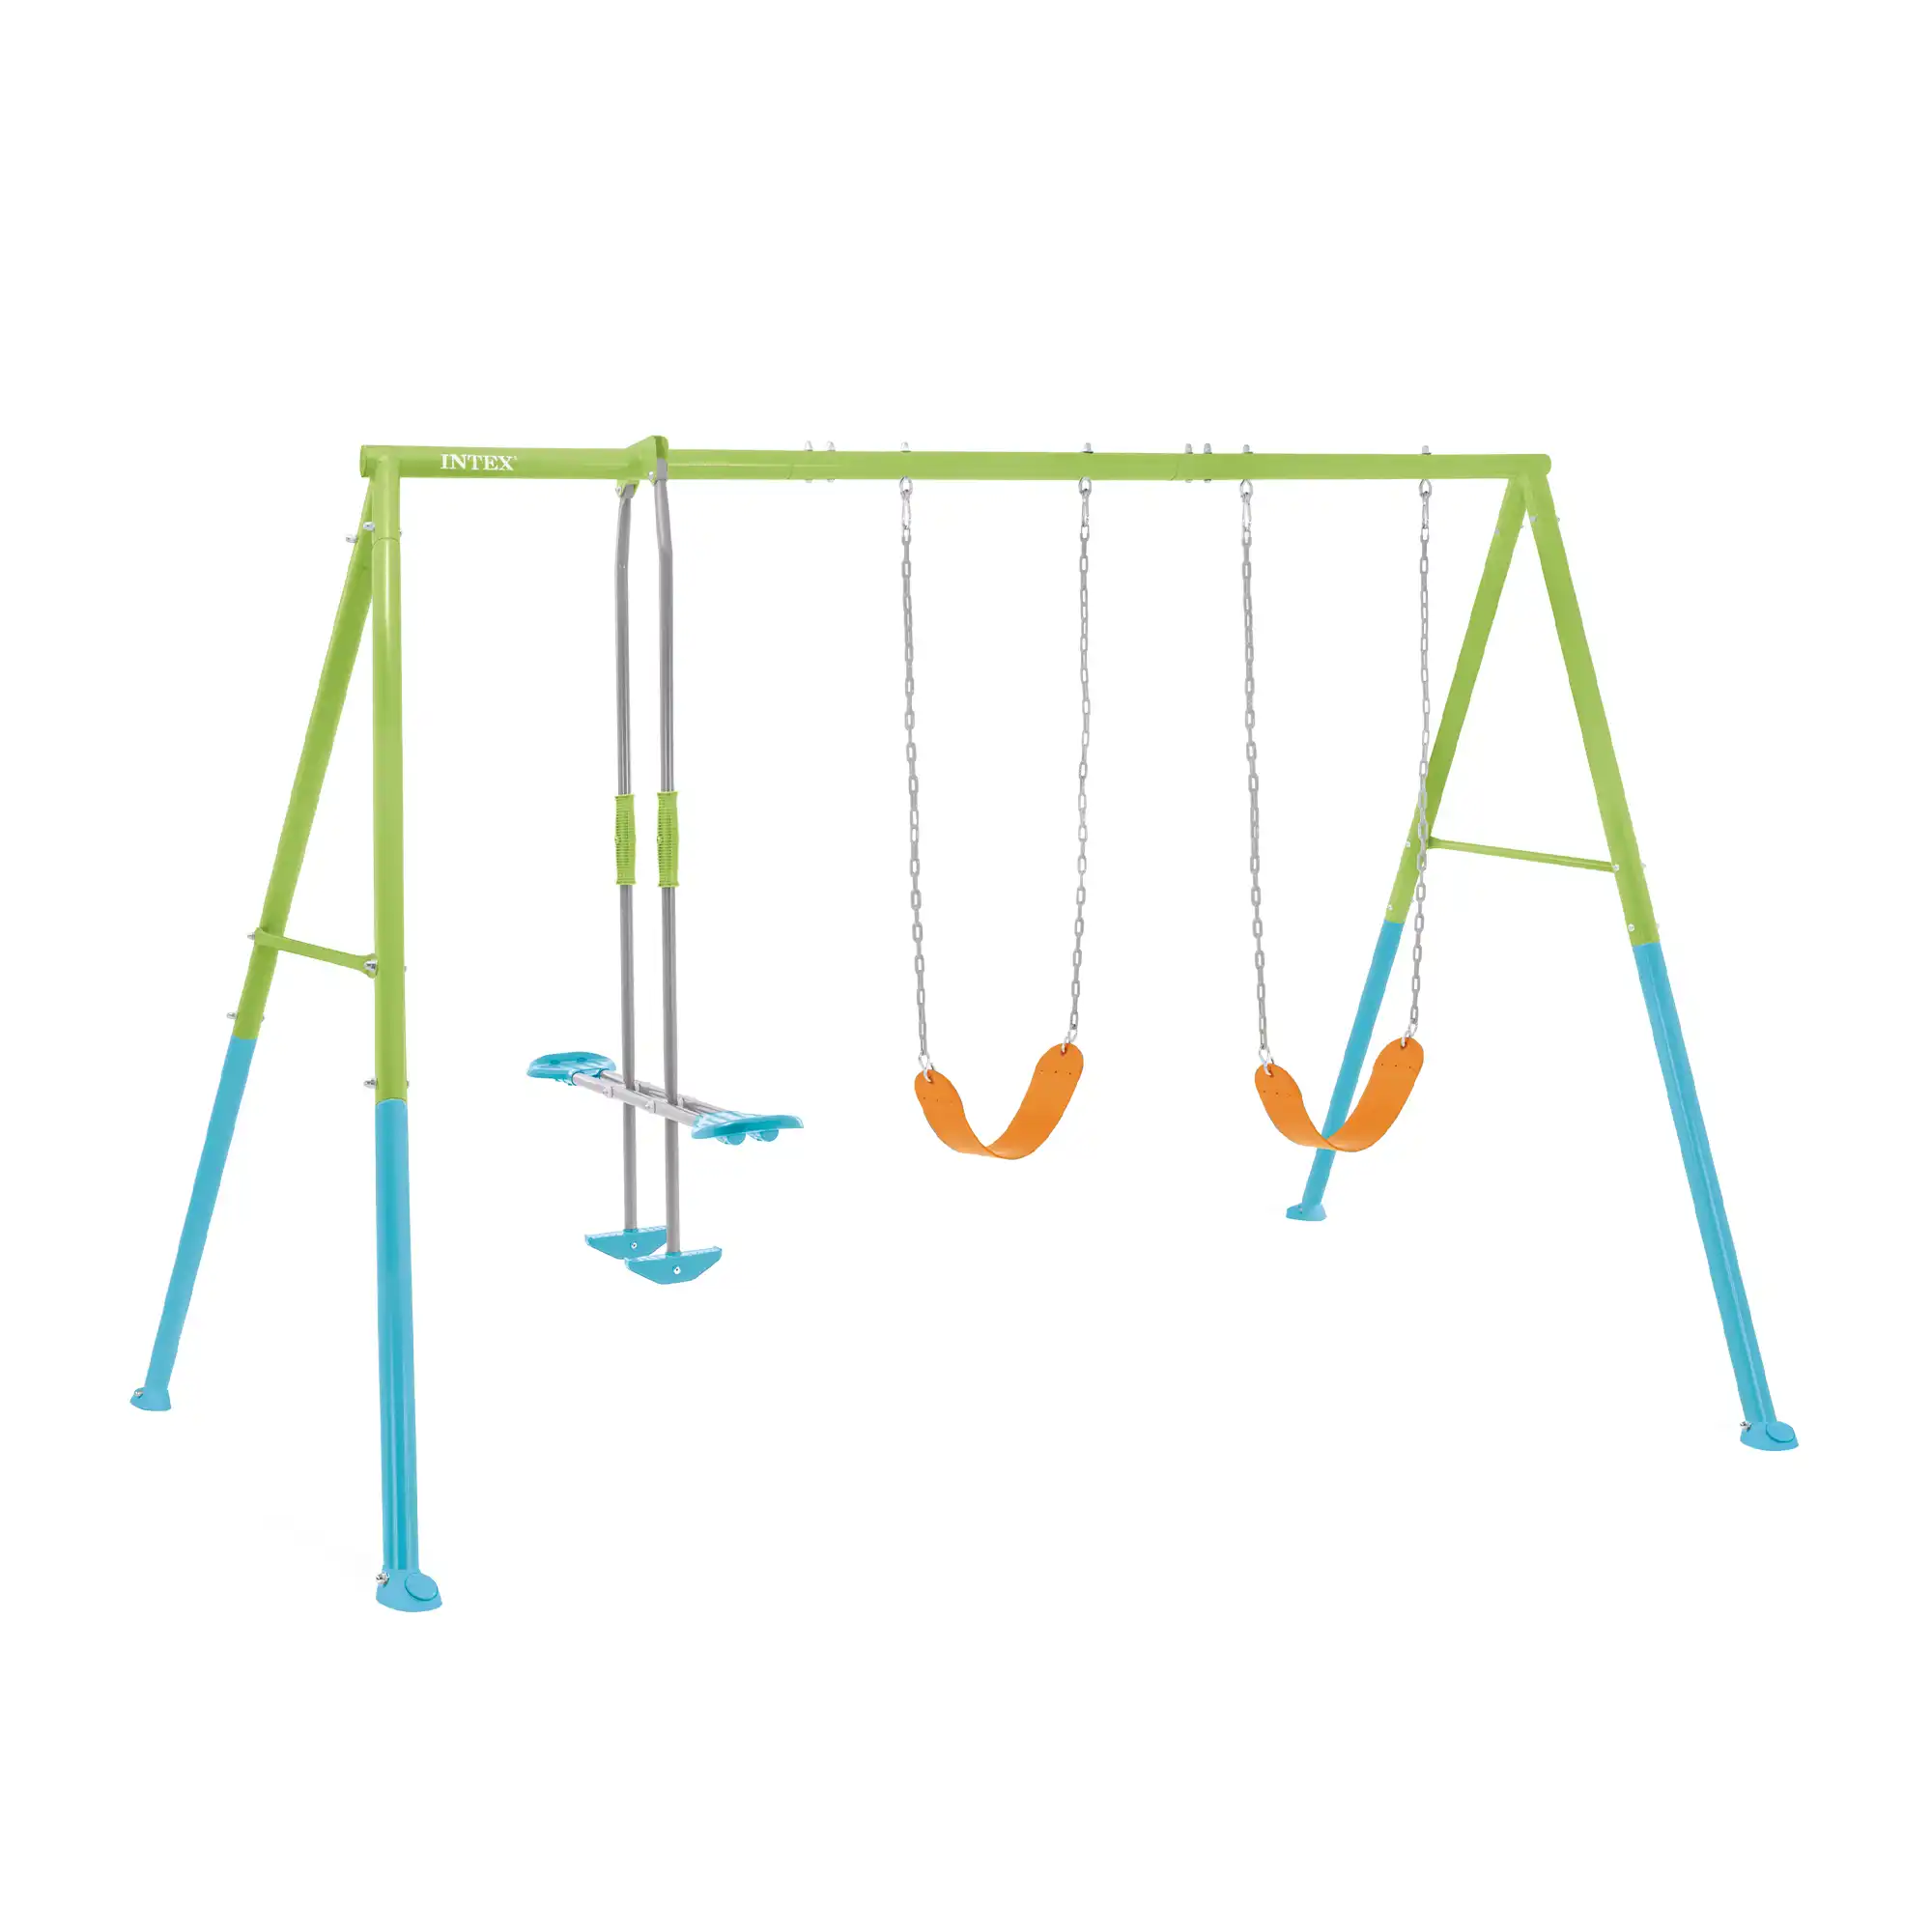 Renkli Swing & Glide salıncak Üç elemanlı set